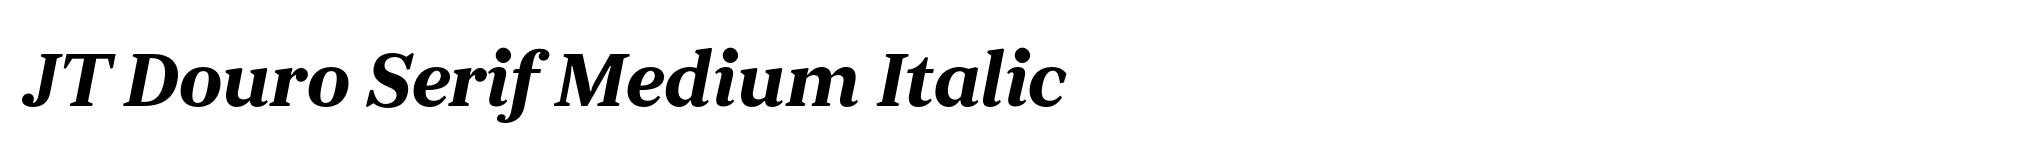 JT Douro Serif Medium Italic image